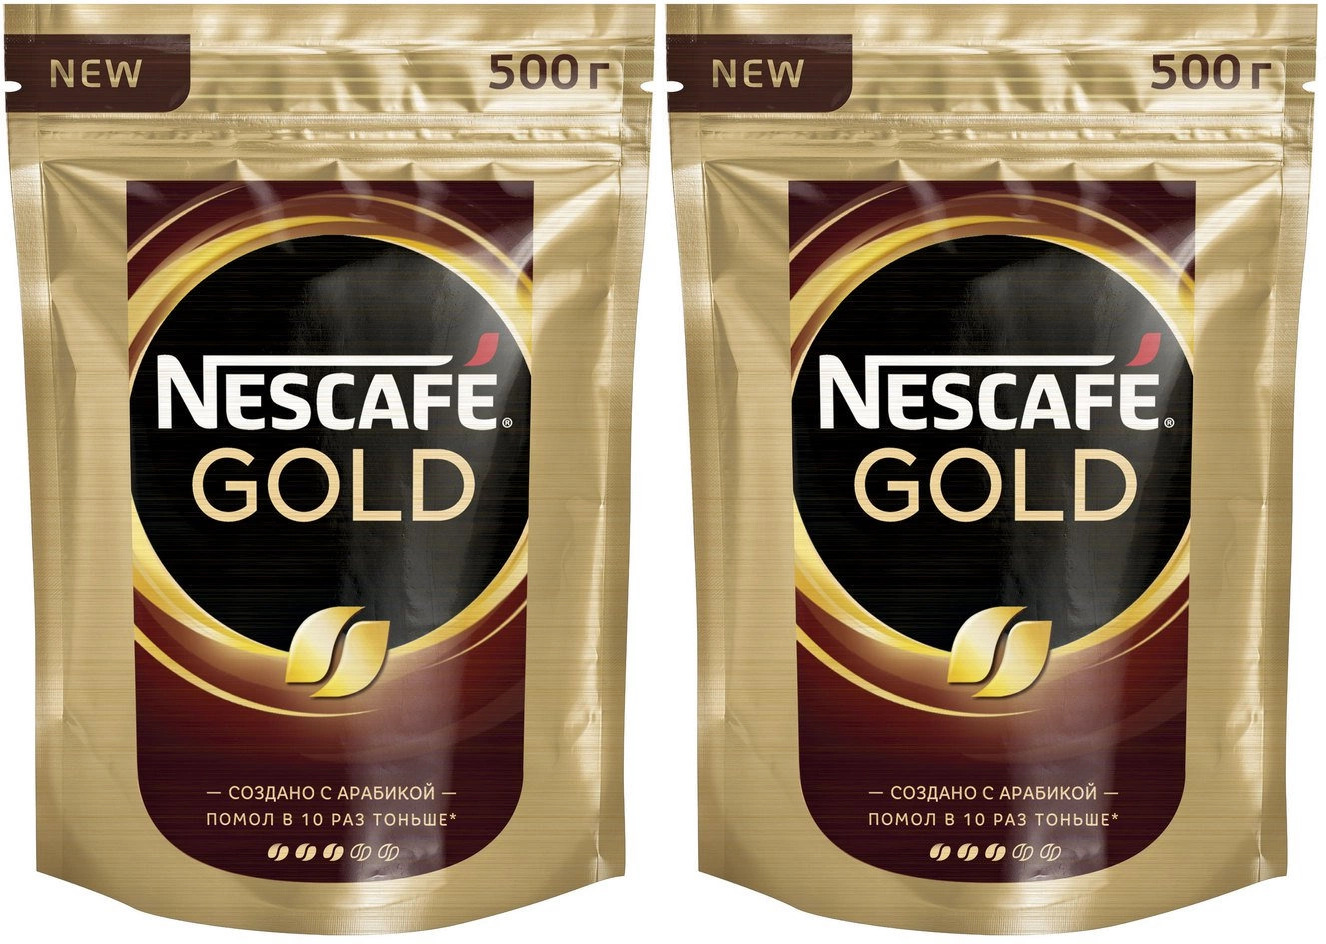 Nescafe gold 320. Кофе Нескафе Голд 500 гр. Nescafe Gold 220 г. Кофе Nescafe Gold растворимый 500 г. Кофе растворимый Нескафе Голд 500г сублимированный.